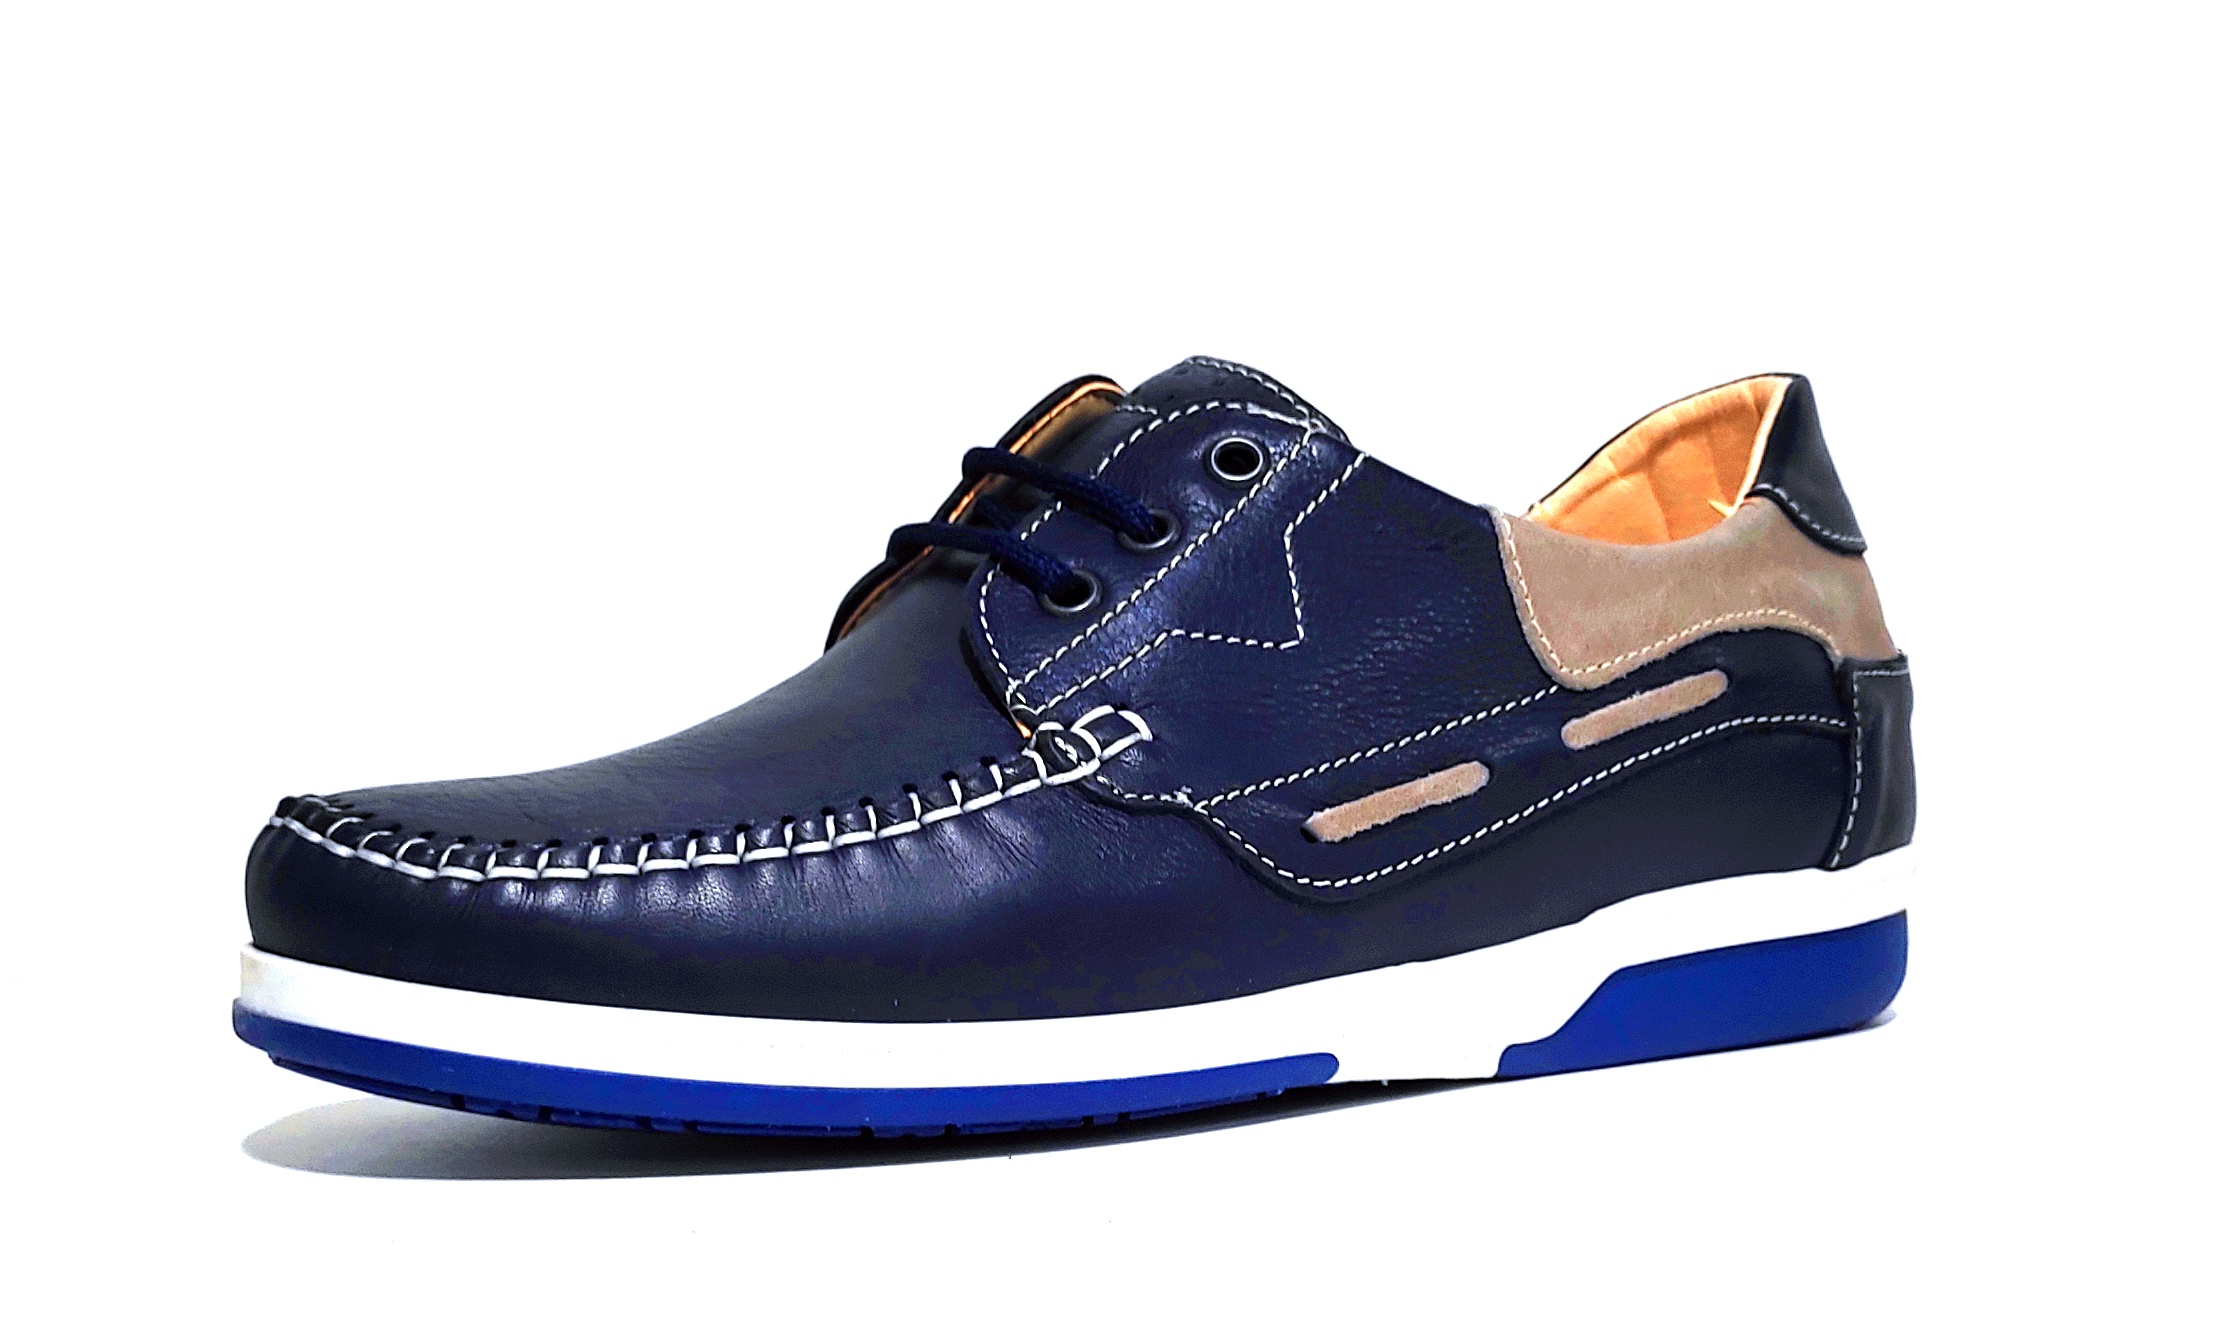 pronto moda crispino 410 scarpa blu vera pelle allacciata uomo estate scarpe mad - Imagen 1 de 1